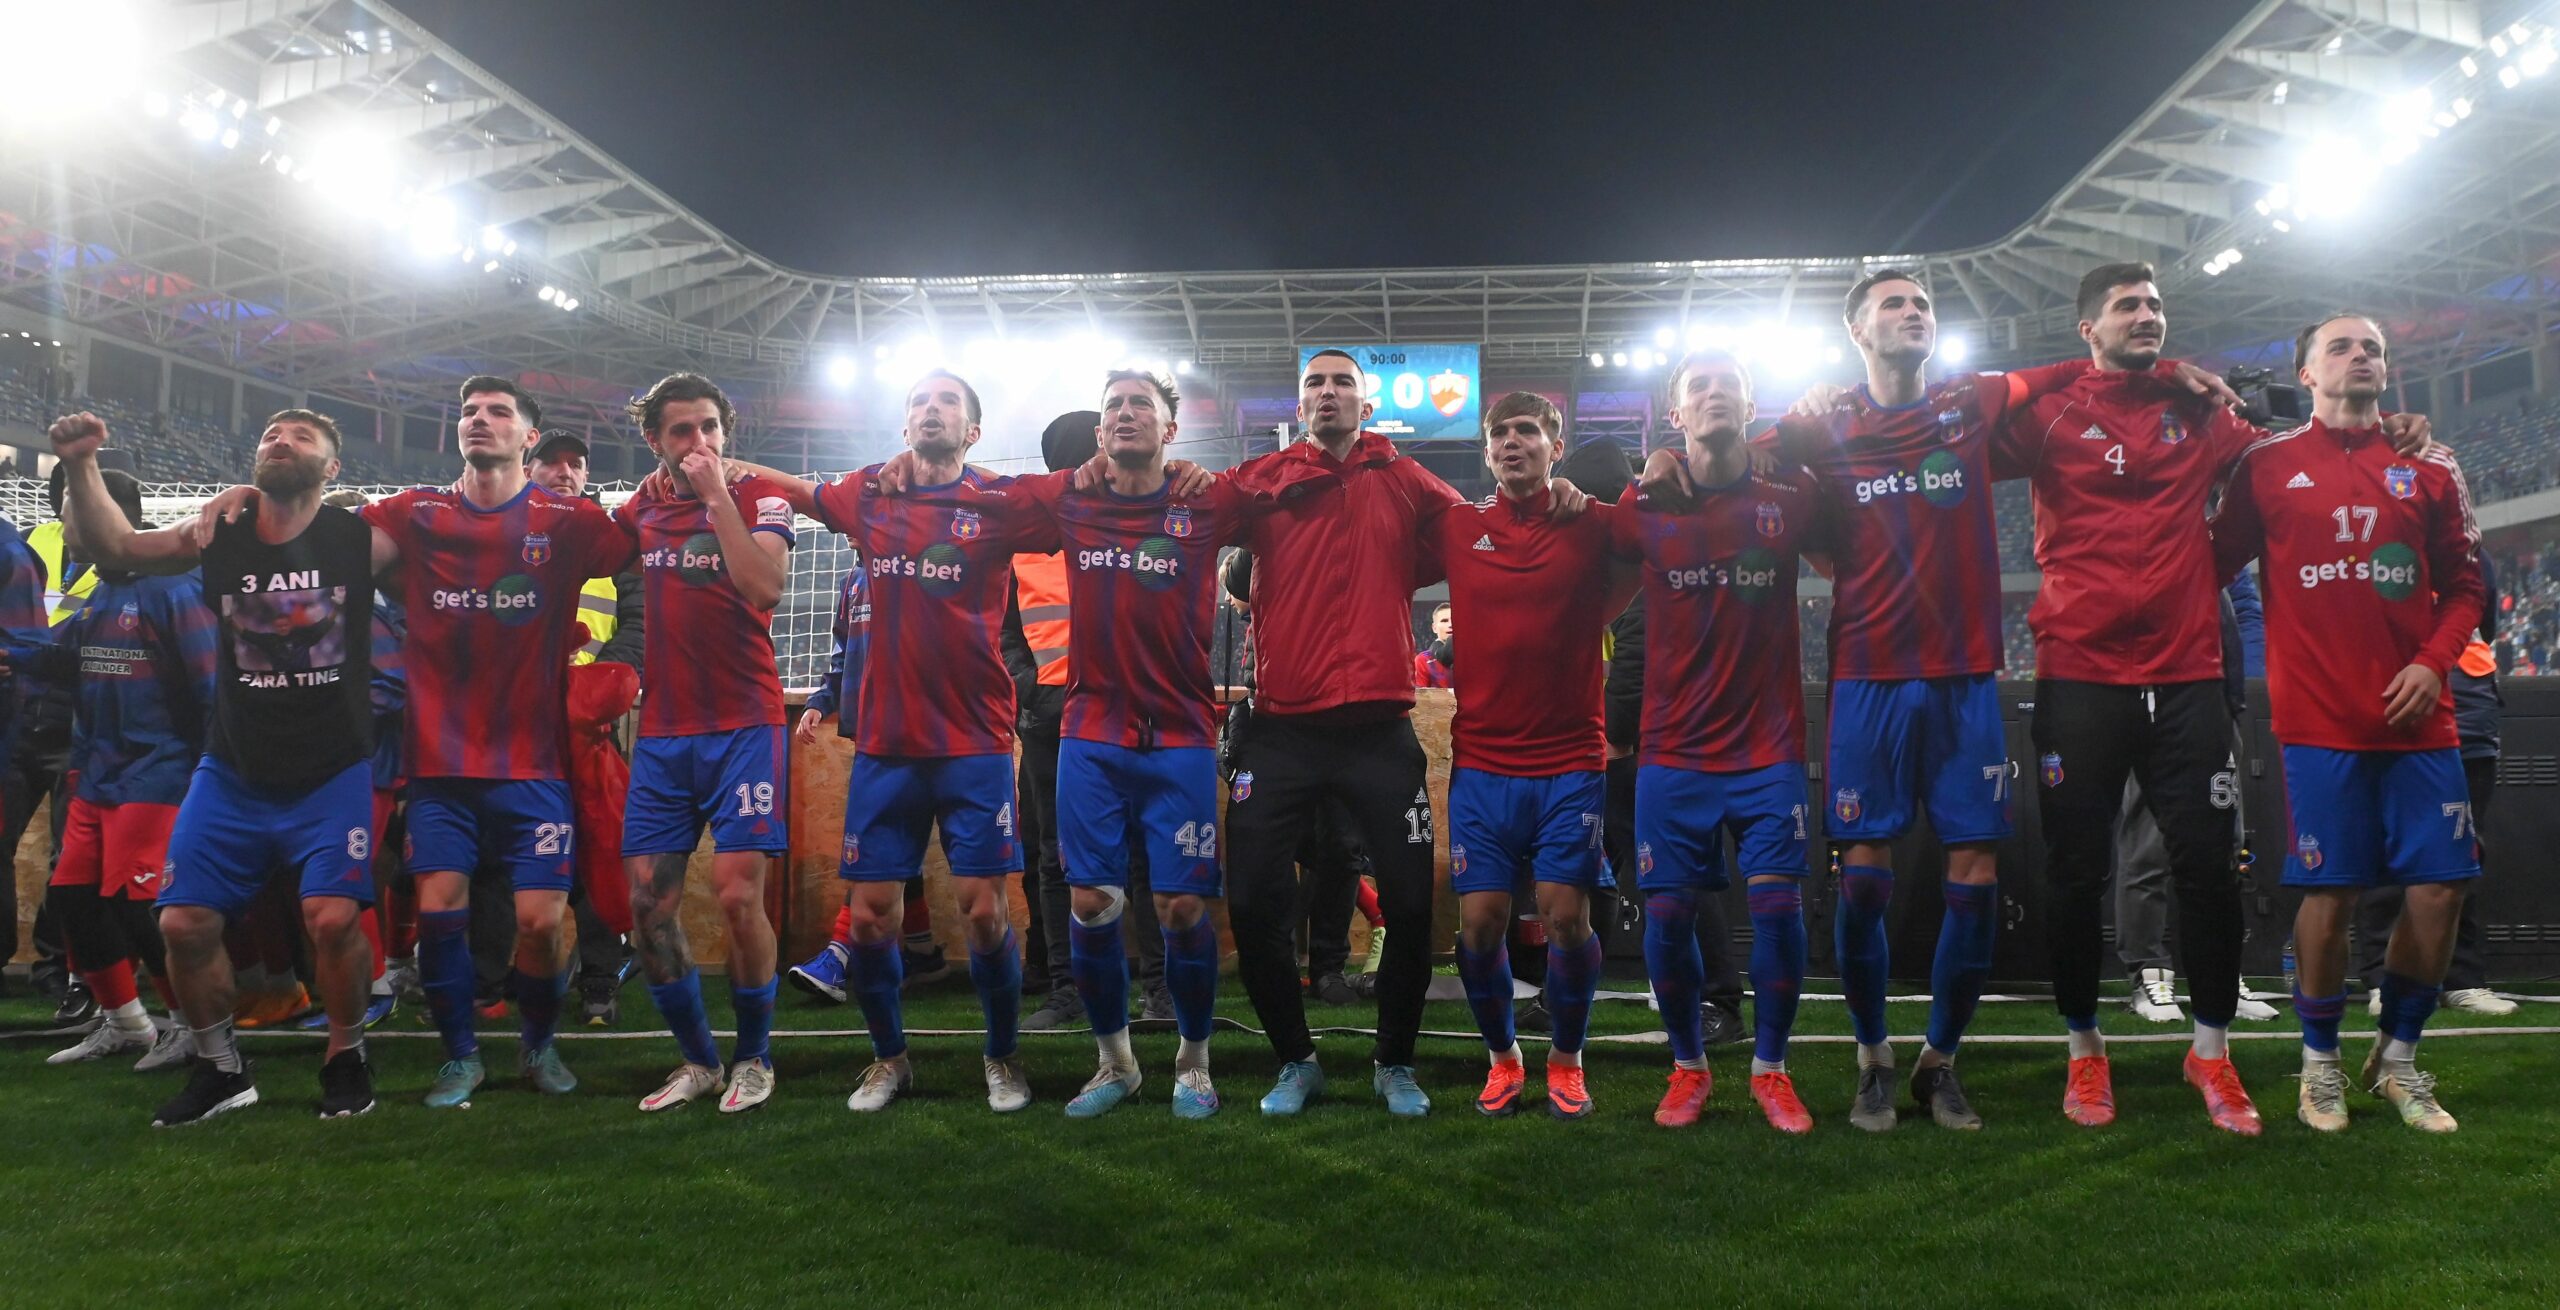 Exclusiv  Urmează schimbări majore la Steaua după promovarea în Liga 2: E  un moment important